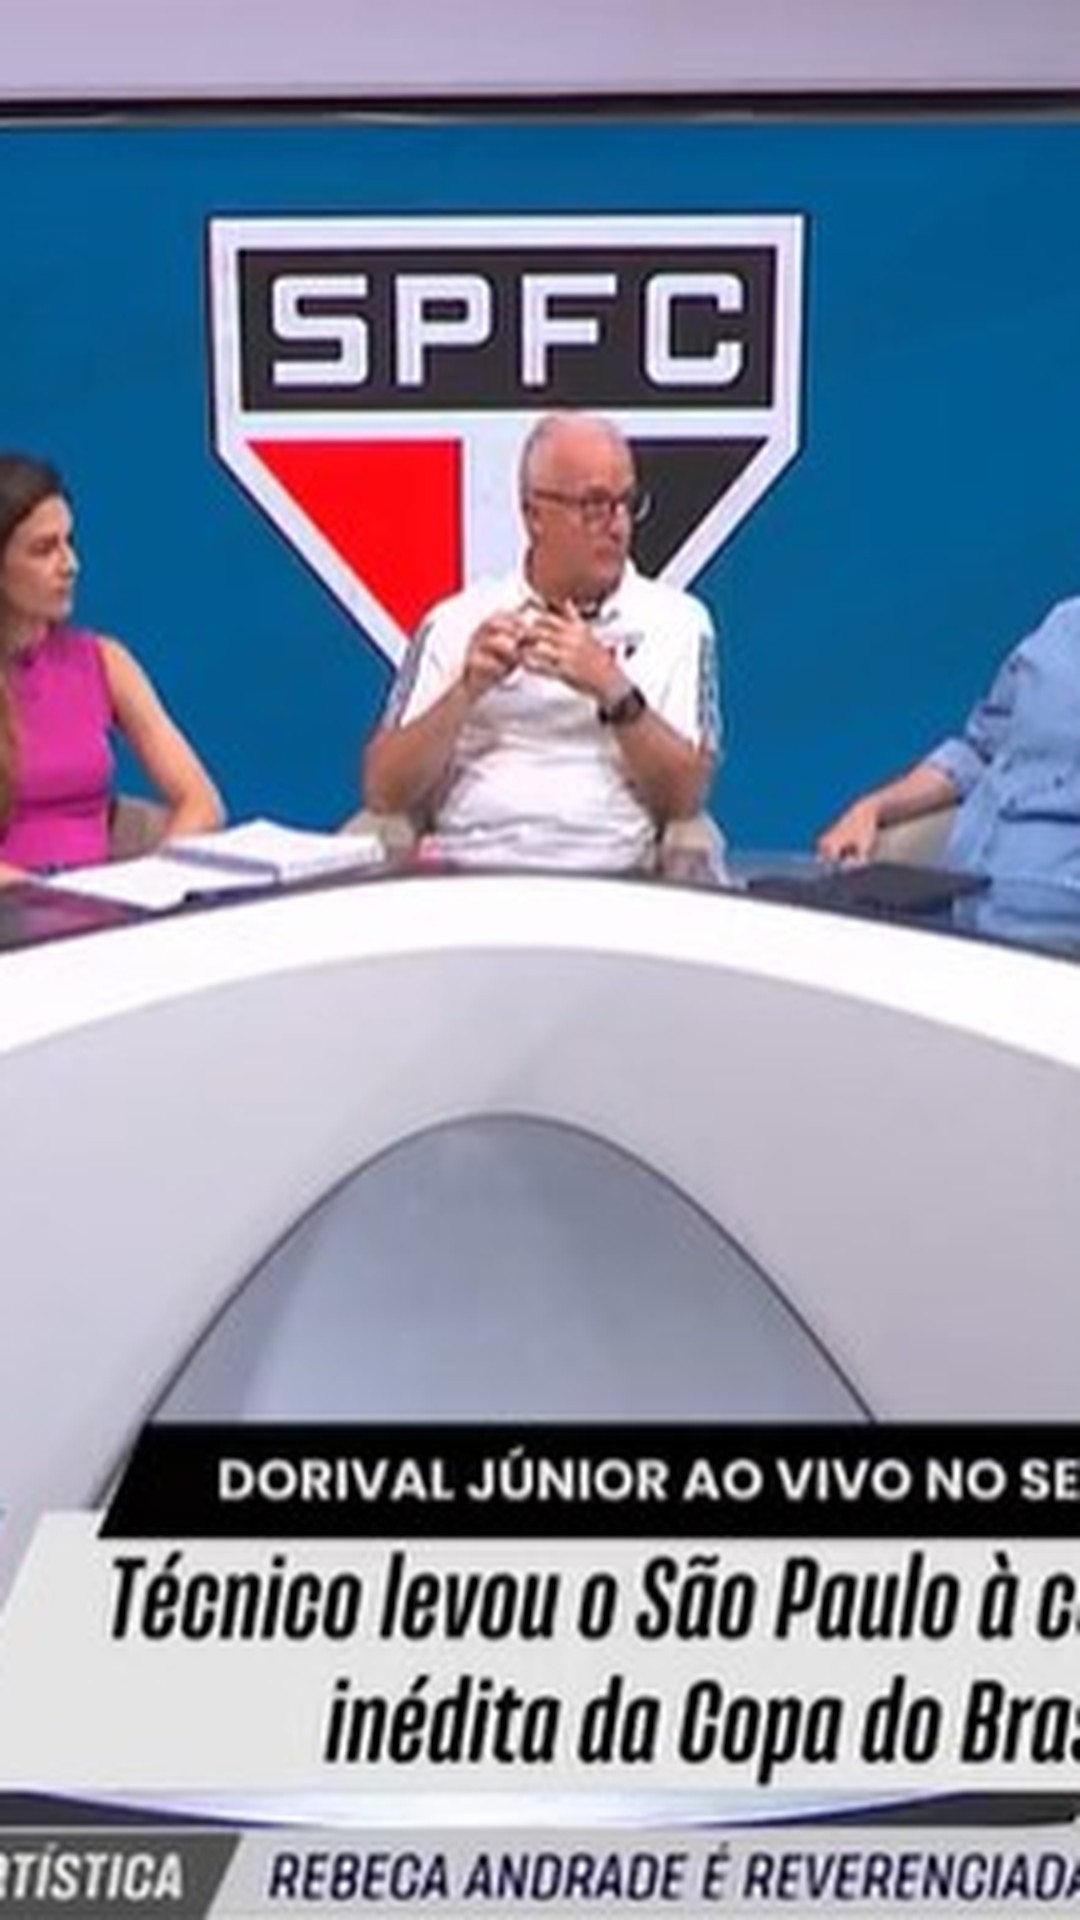 PC Oliveira analisa relato de comissão da CBF sobre gol anulado do Vasco:  Discordo totalmente, seleção sportv